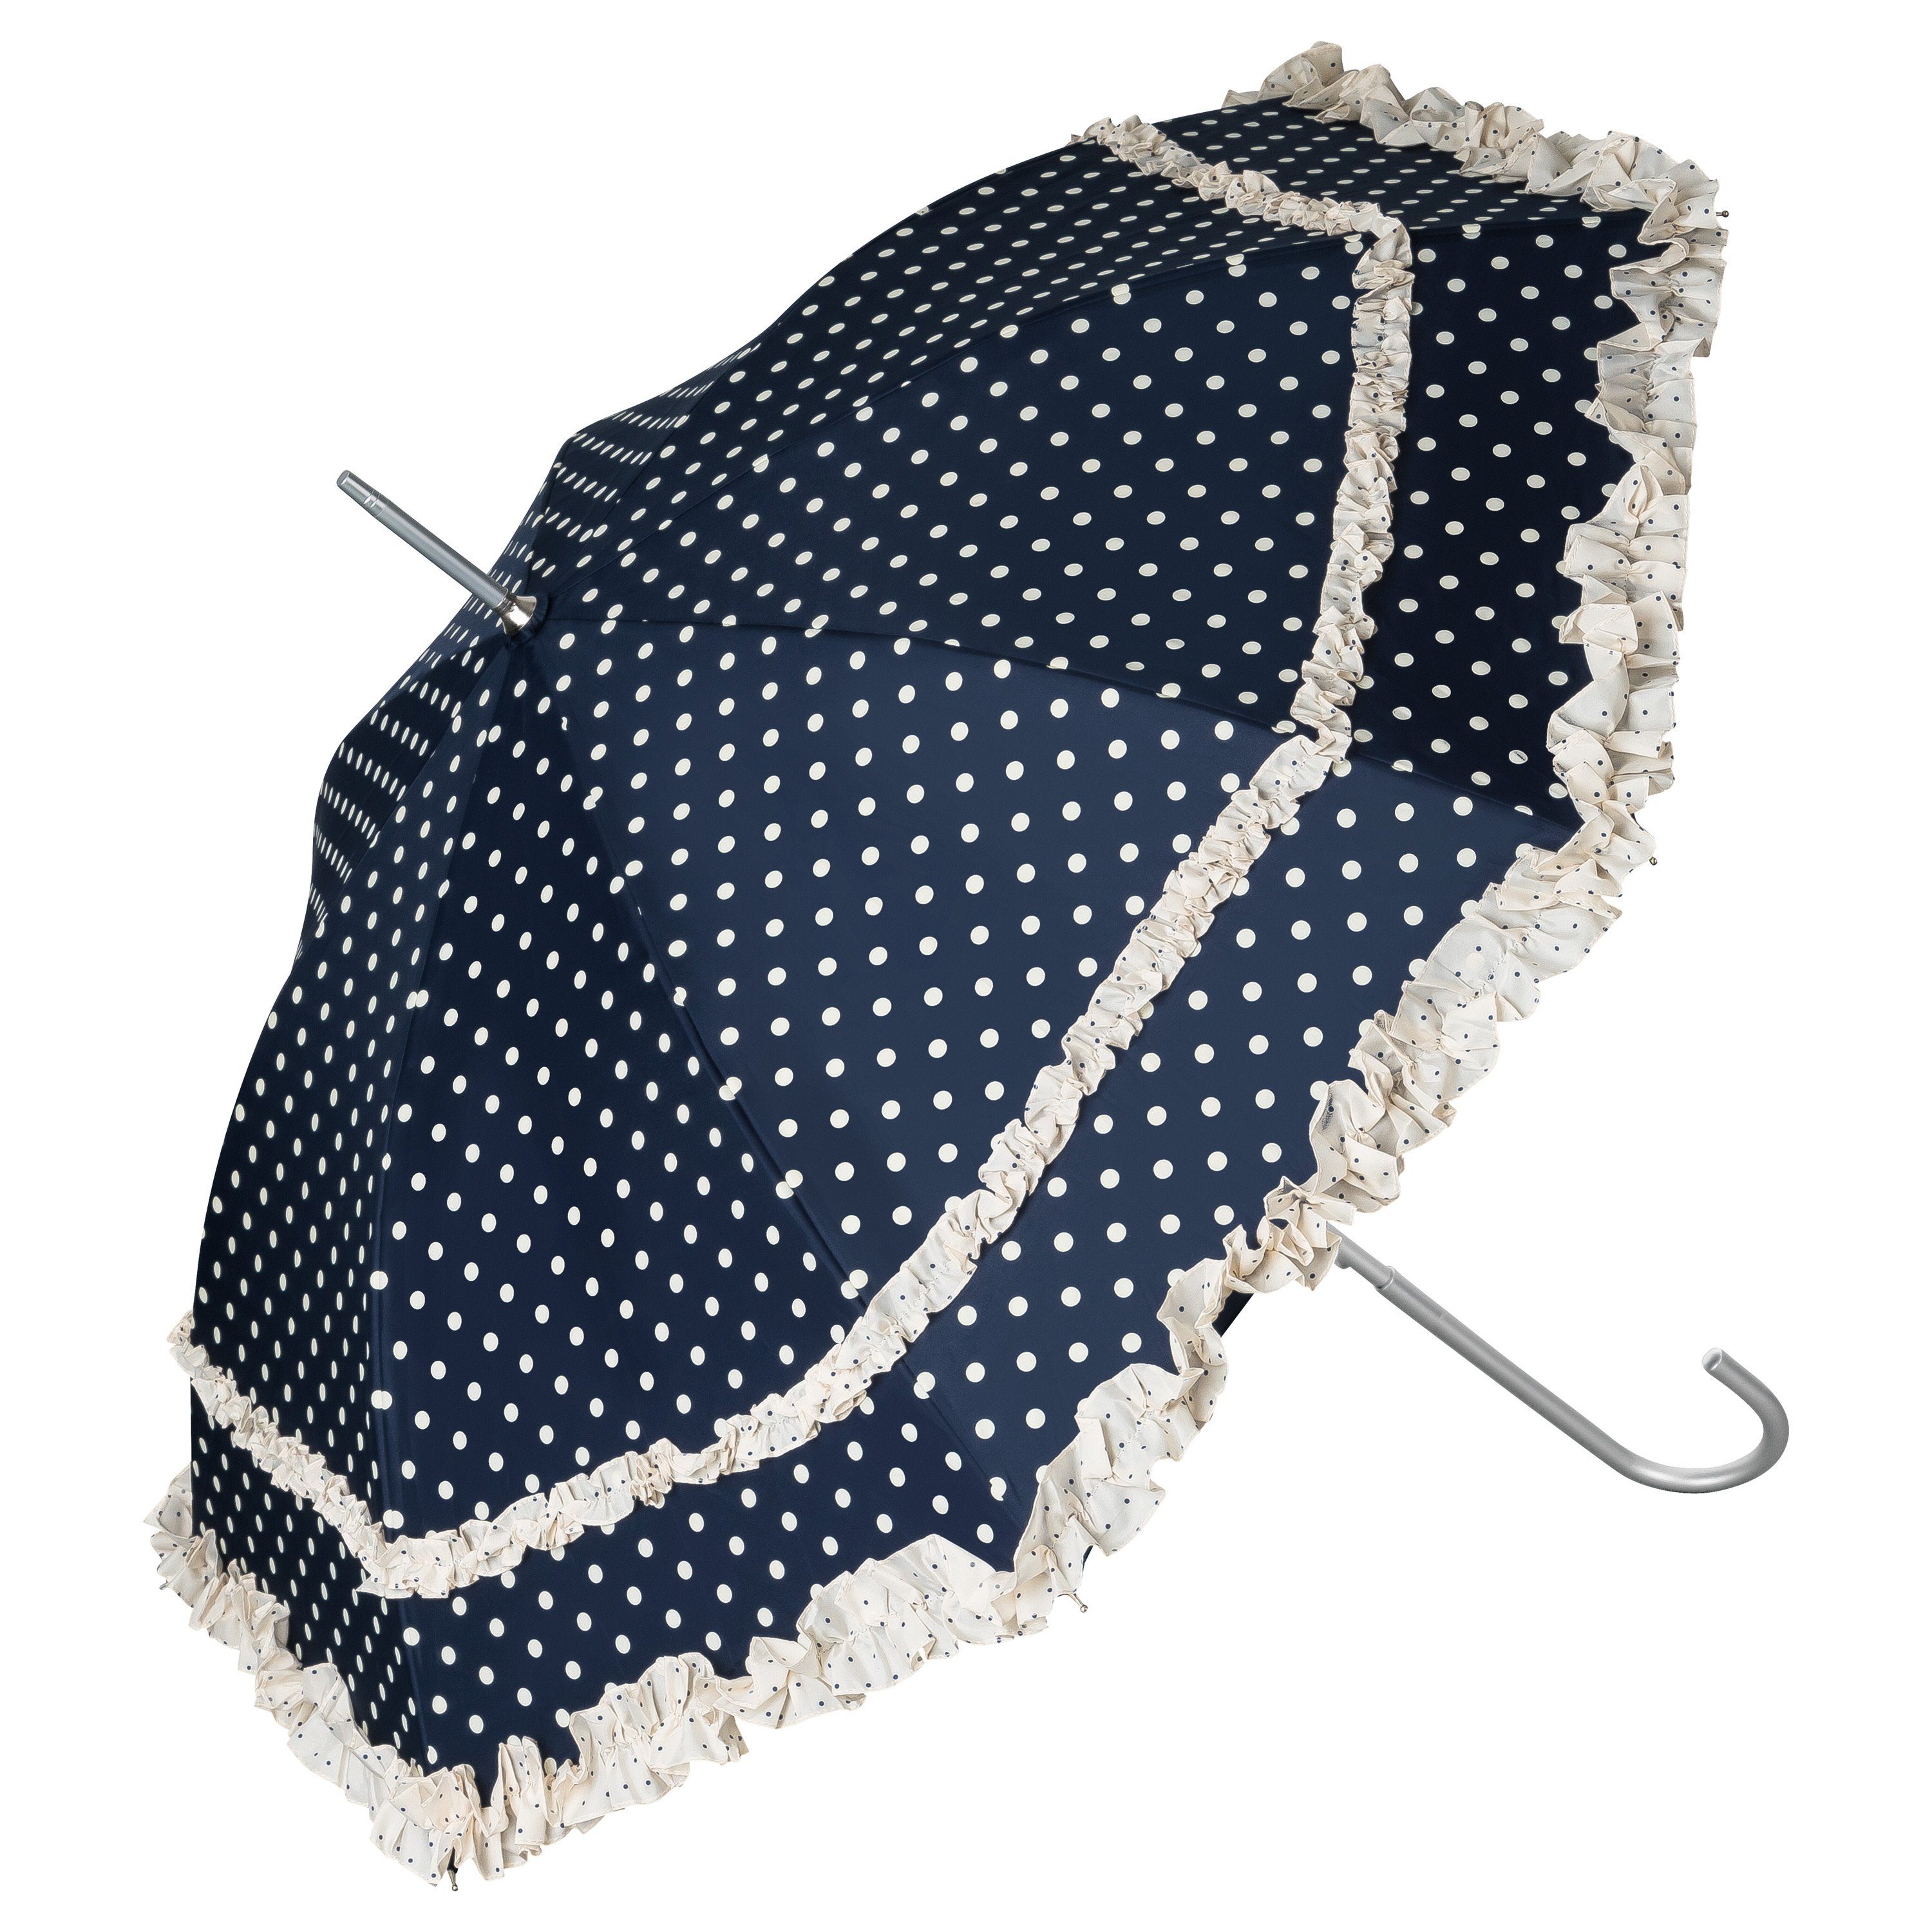 von Lilienfeld Stockregenschirm Regenschirm Sonnenschirm Hochzeitsschirm Mary, zwei Rüschenkanten blau mit Punkten in creme